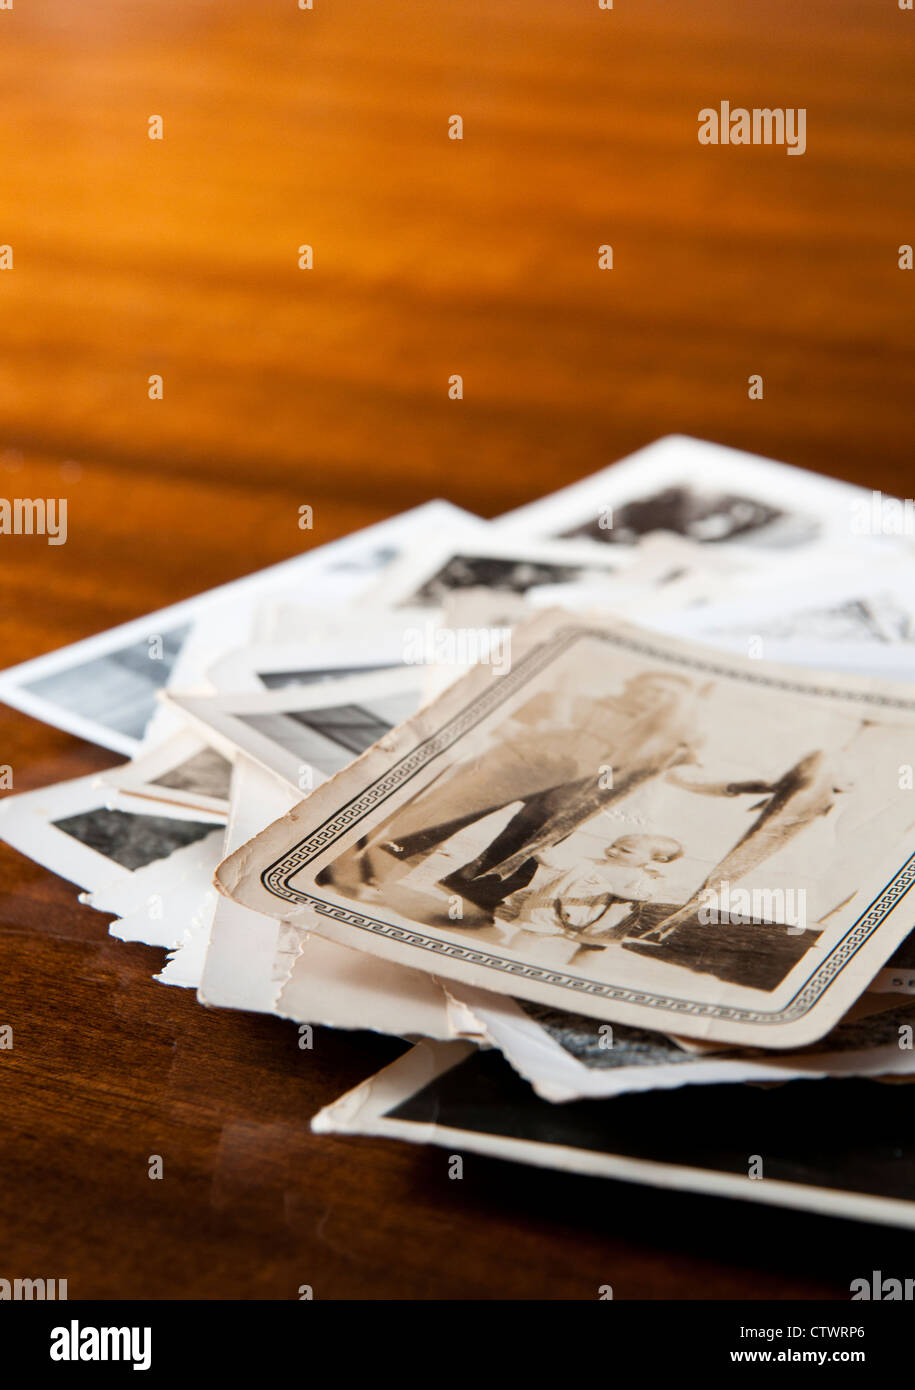 Haufen alter schwarz-weiß Familienfotos auf einem Tisch Stockfoto